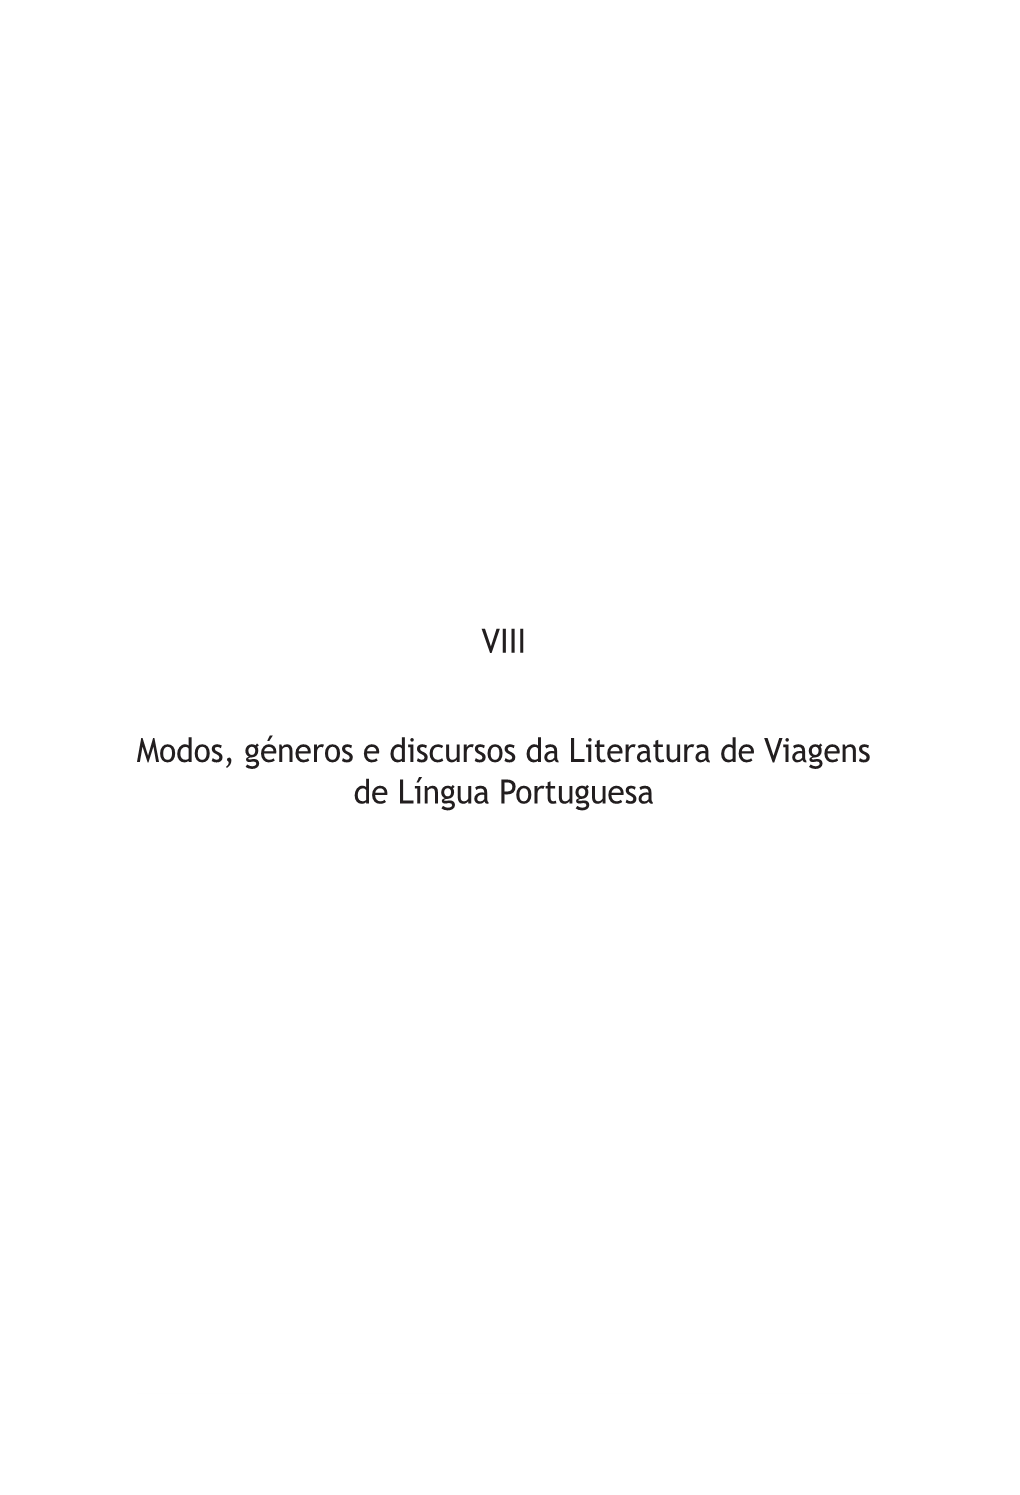 VIII Modos, Géneros E Discursos Da Literatura De Viagens De Língua